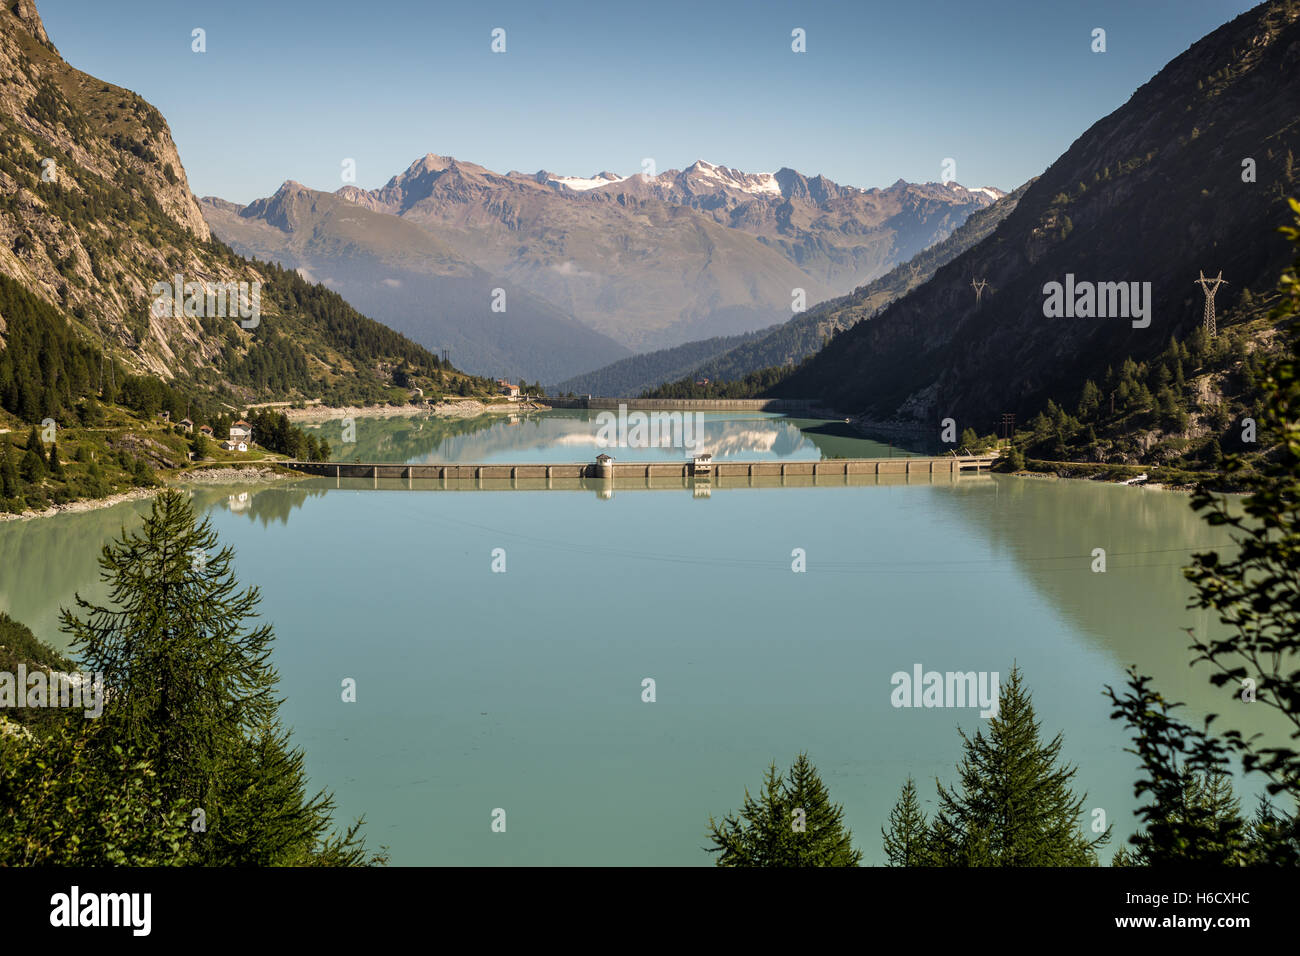 Avio lakes and dam in Temù, near Ponte di Legno, Valcamonica, Italy Stock Photo